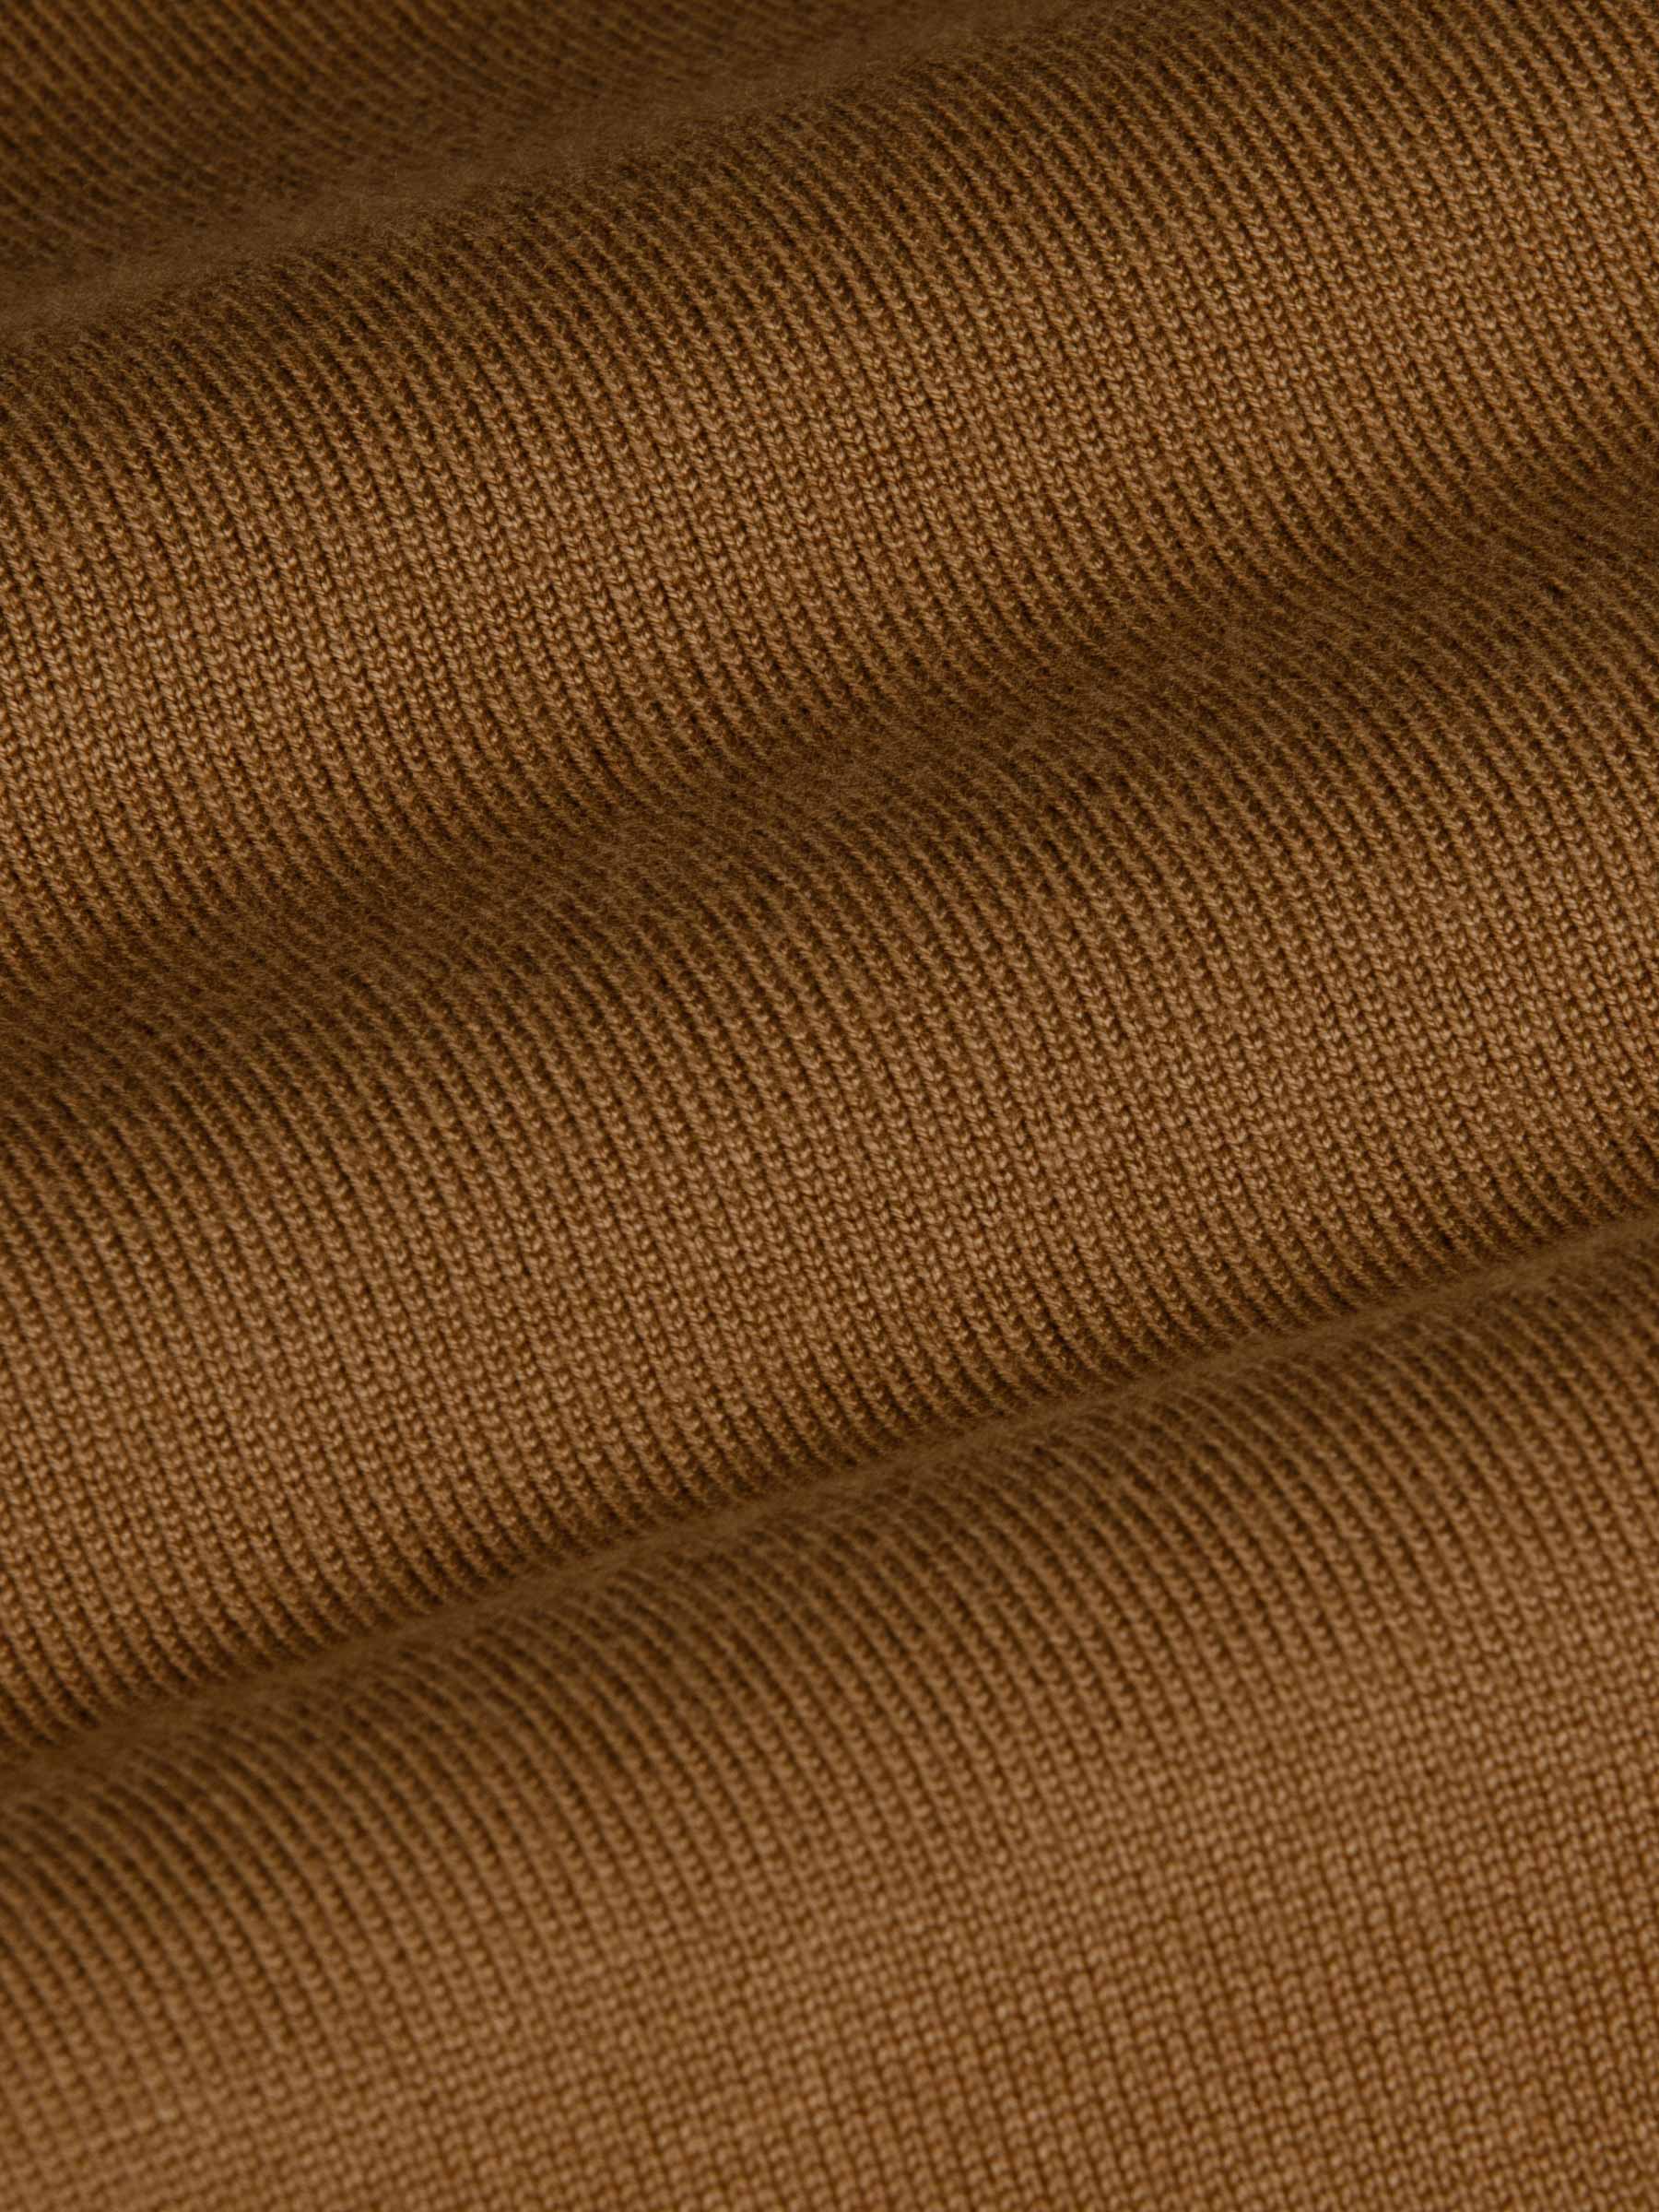 Siena Round-Necked Brown Sweater-L